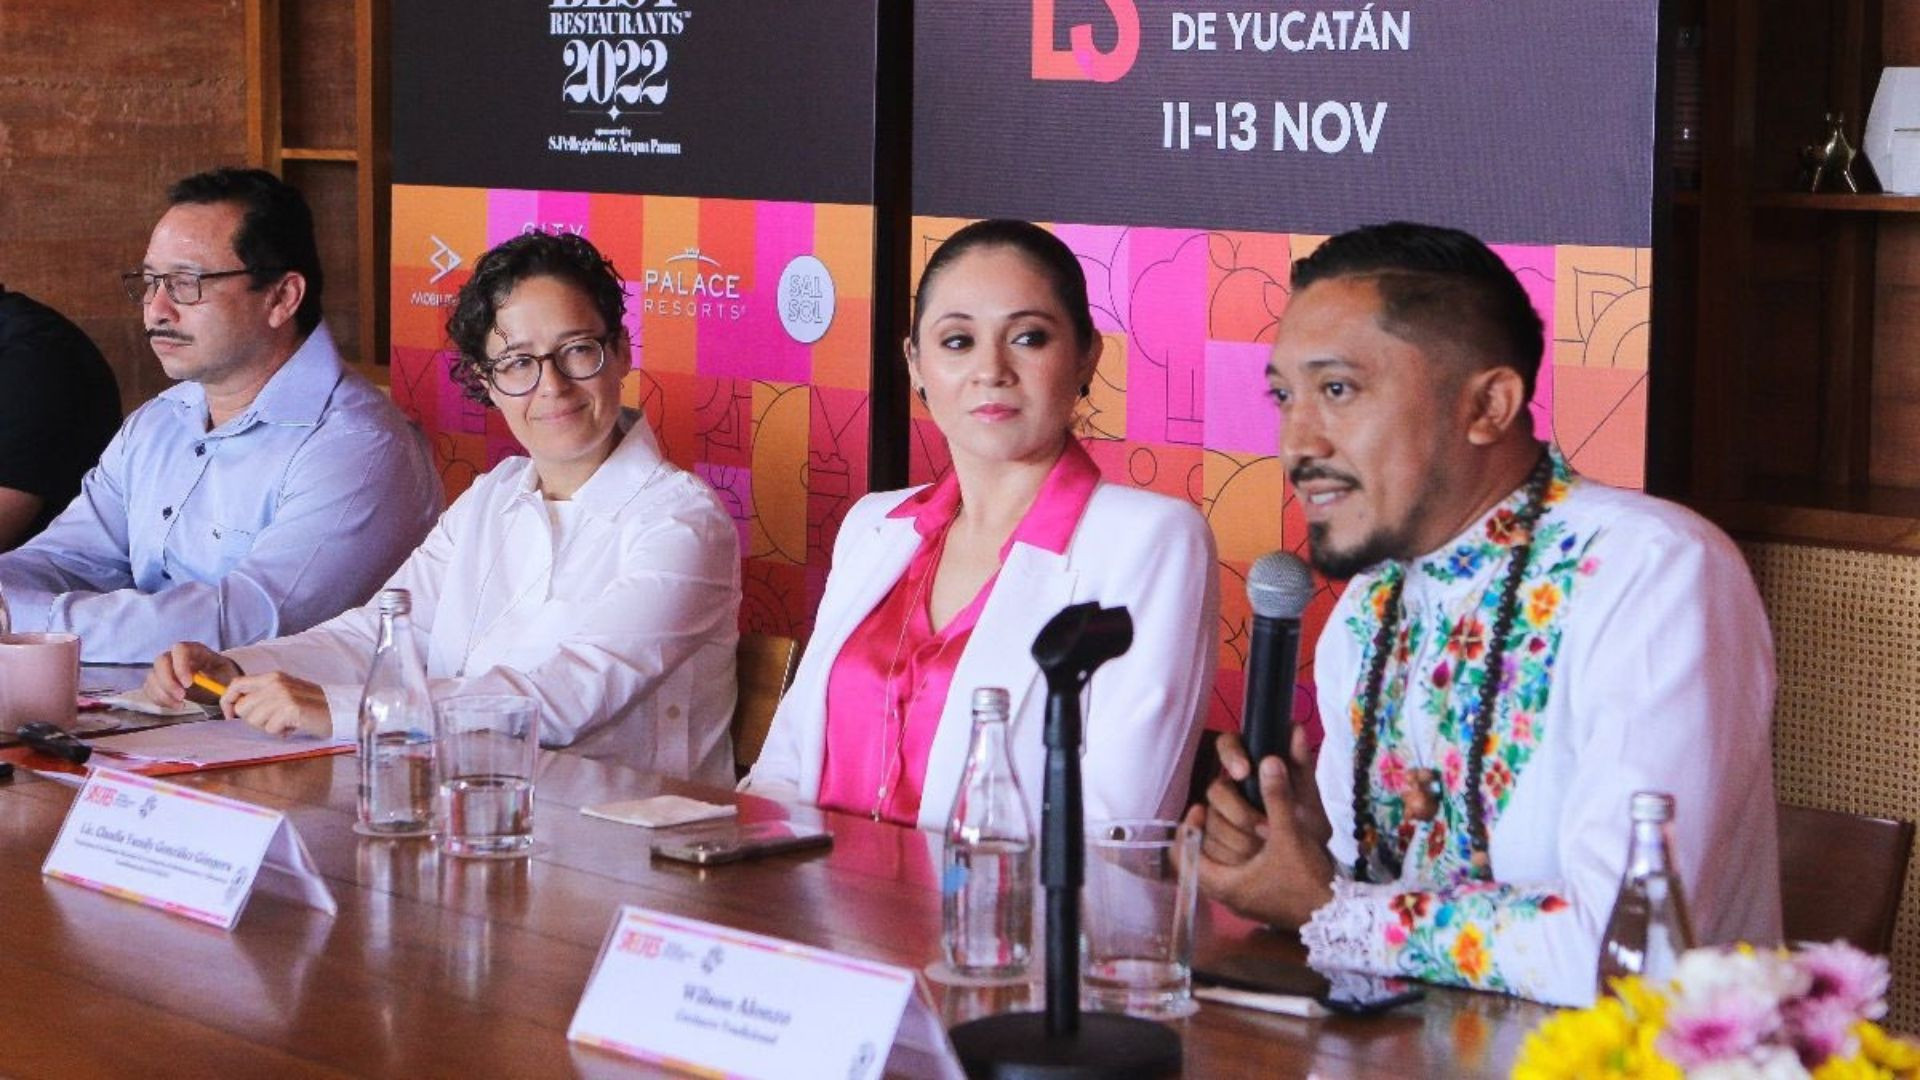 Festival Sabores de Yucatán: Un banquete internacional que despierta los sentidos